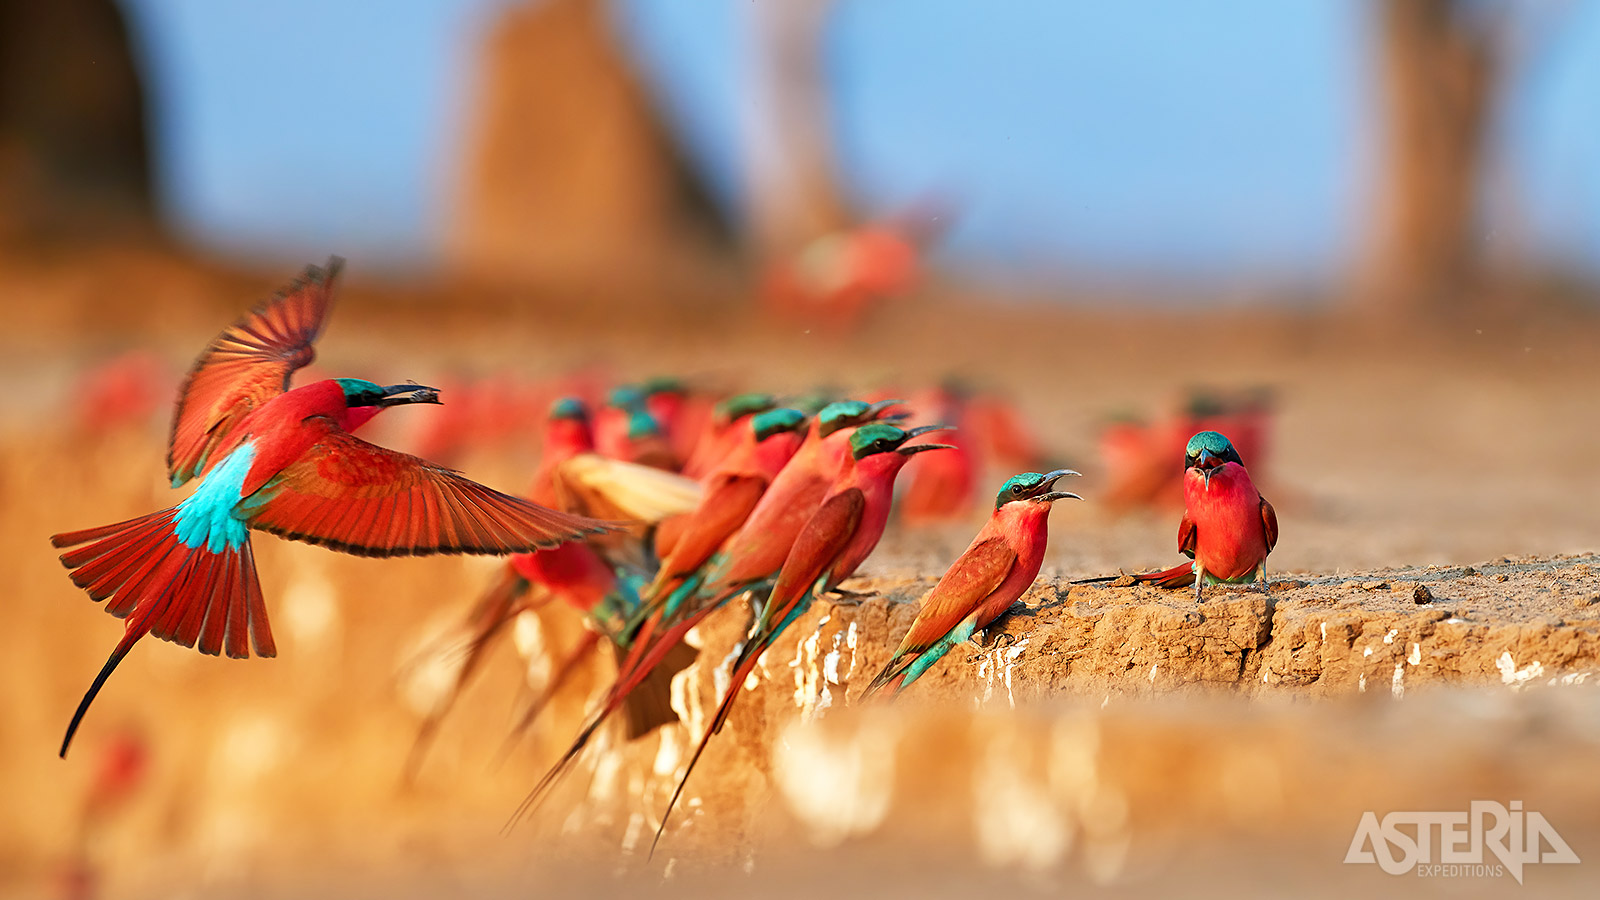 Met meer dan 750 vogelsoorten is Zambia een perfect bestemming voor vogelaars en natuurfotografen